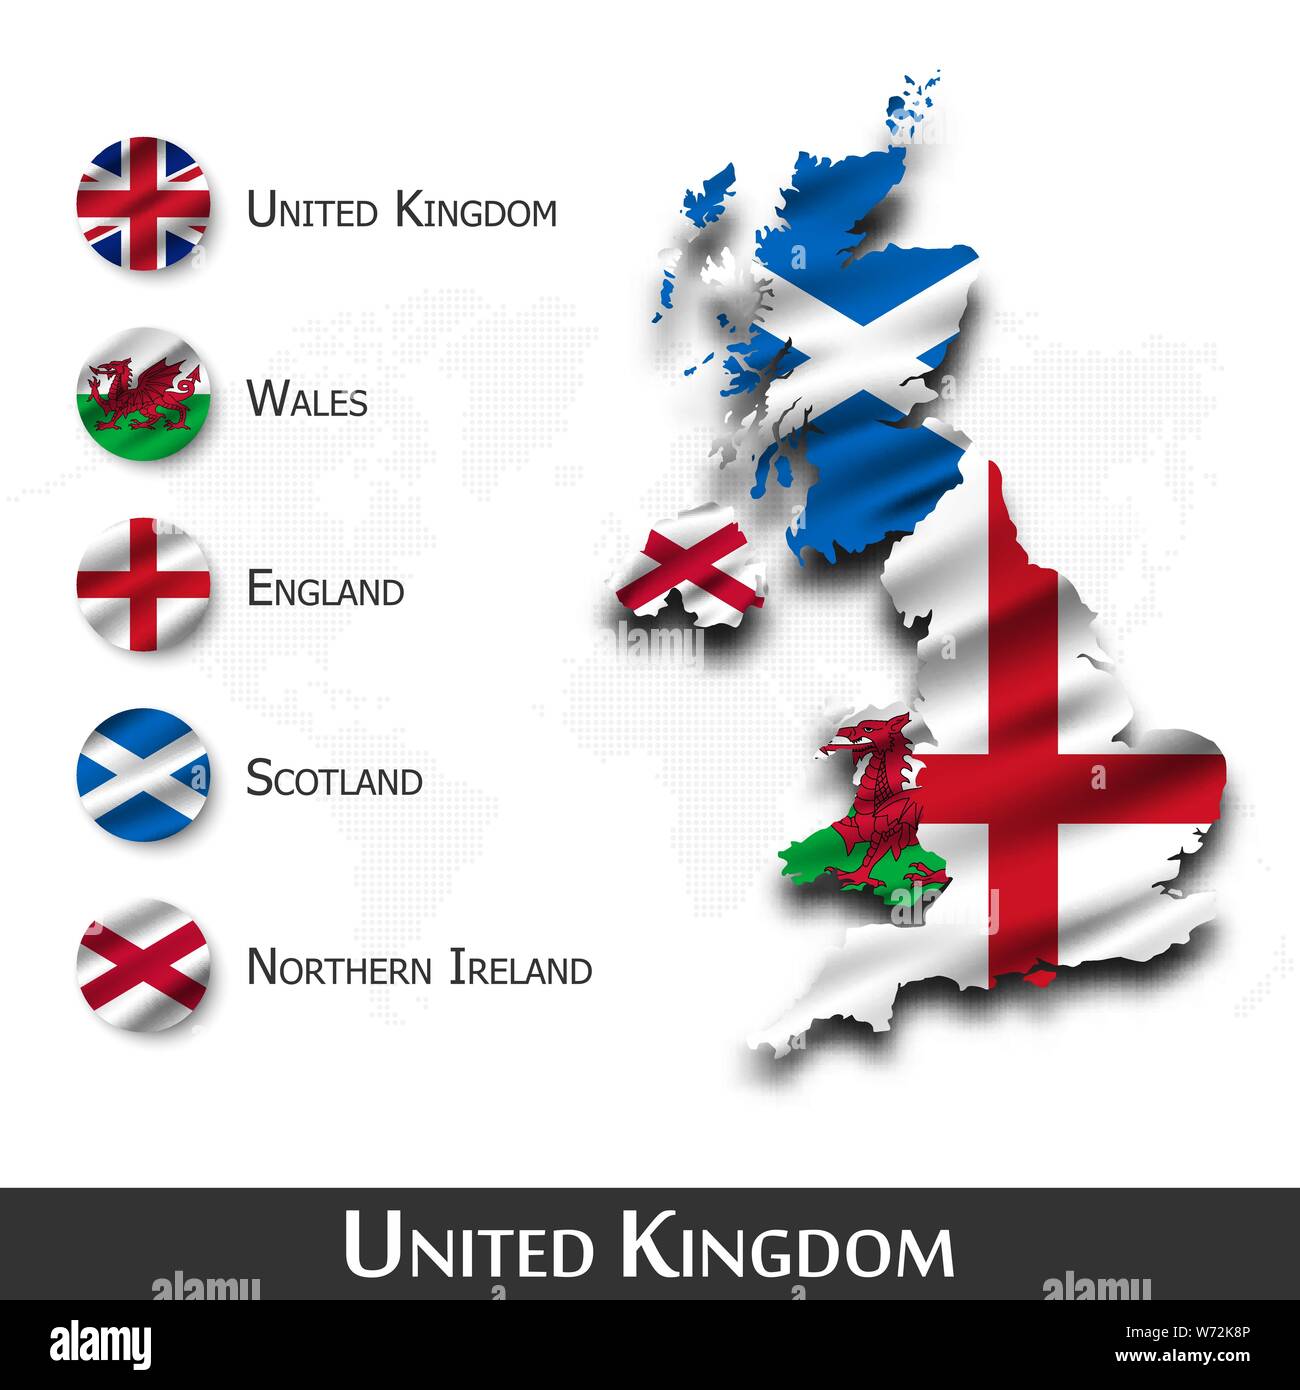 Royaume-uni de Grande-Bretagne la carte et drapeau ( Ecosse . L'Irlande du Nord . Pays de Galles . L'Angleterre ) . Forme design textile . Dot world map background . Ve Illustration de Vecteur